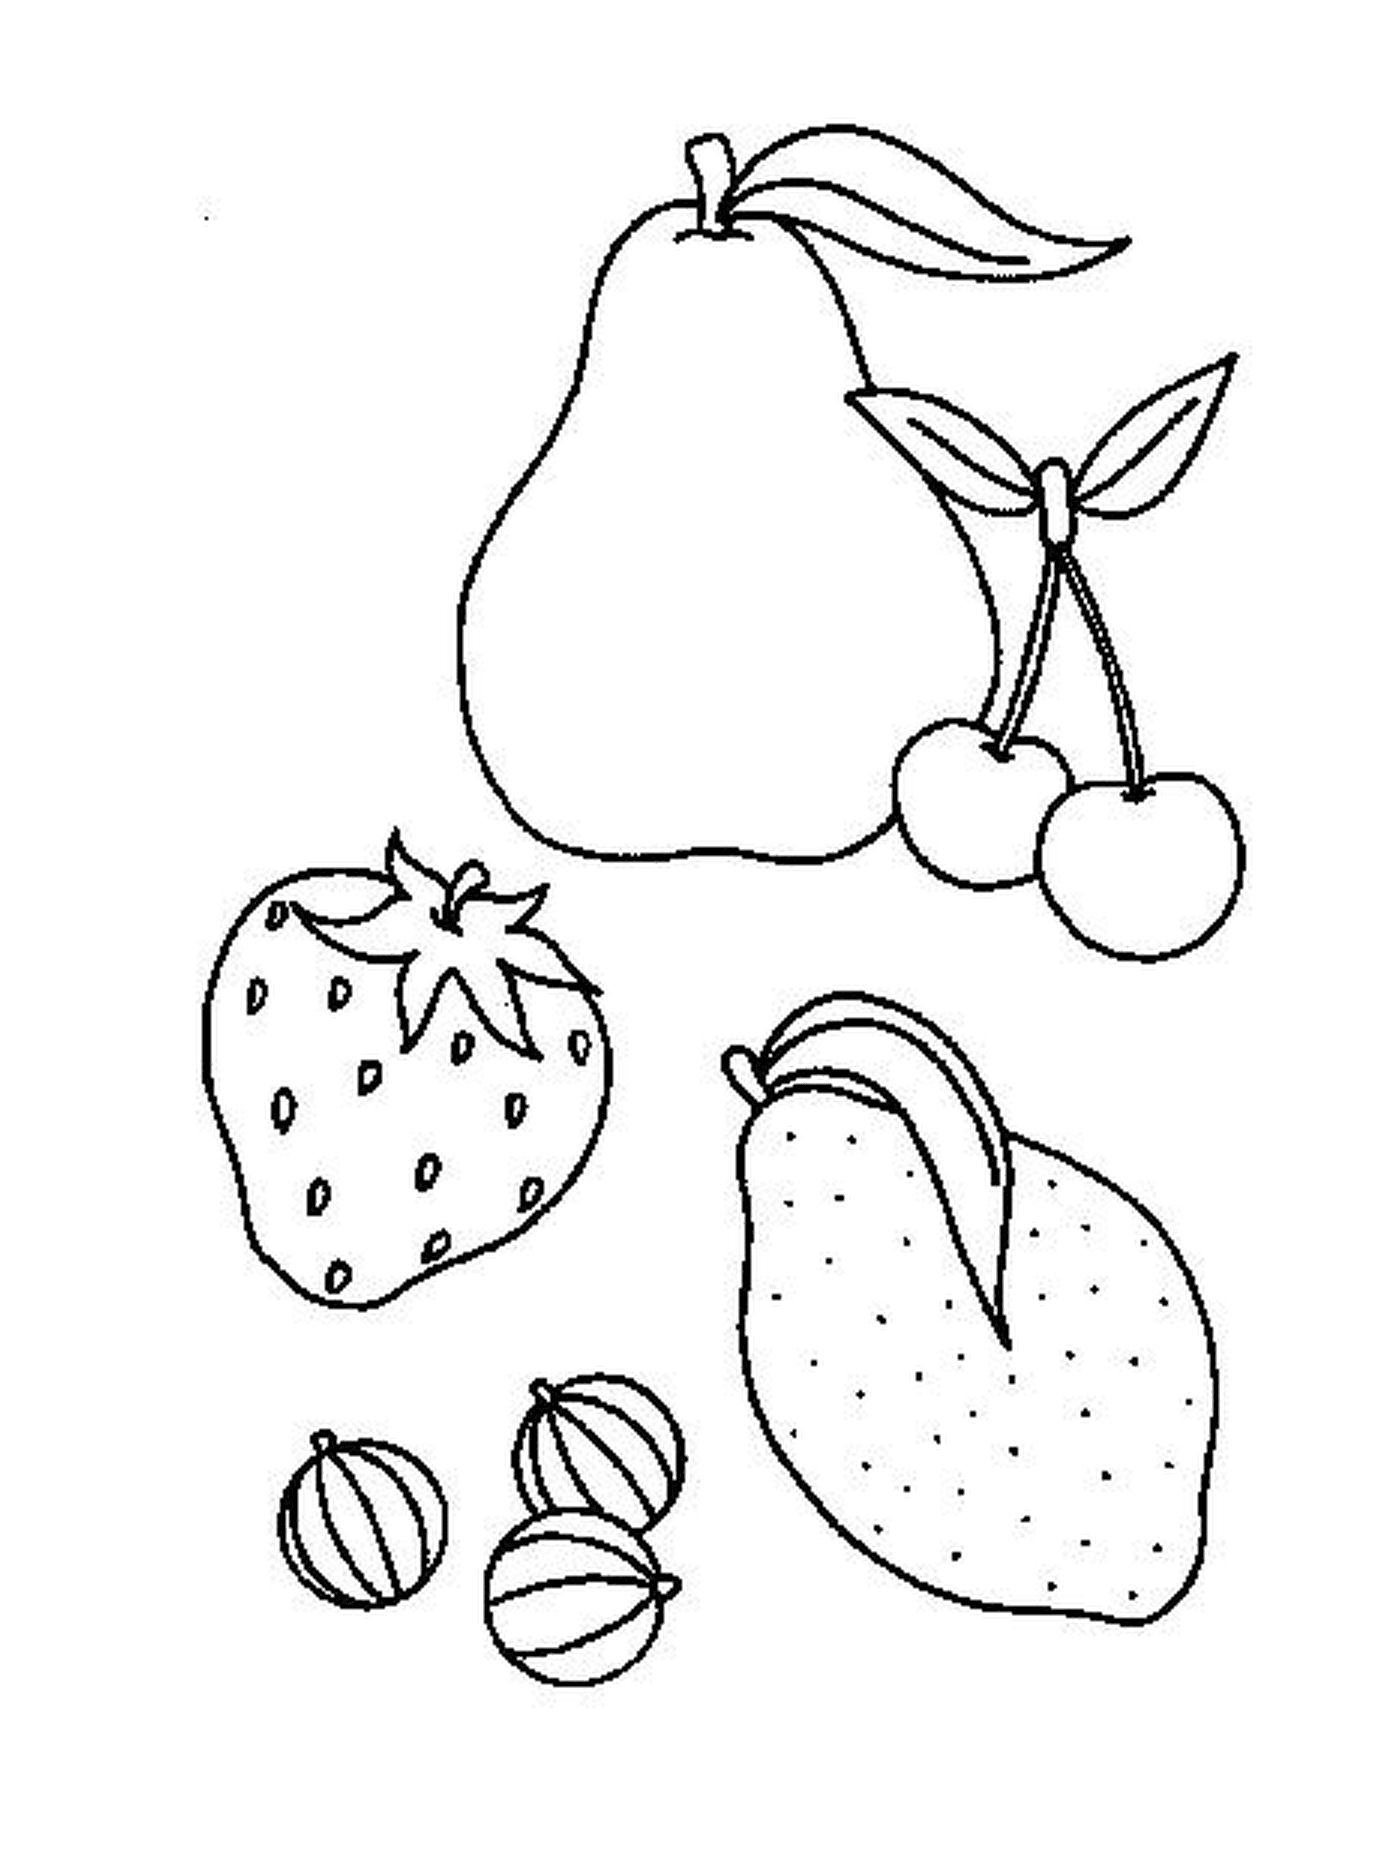   mélange de fruits dessinés 